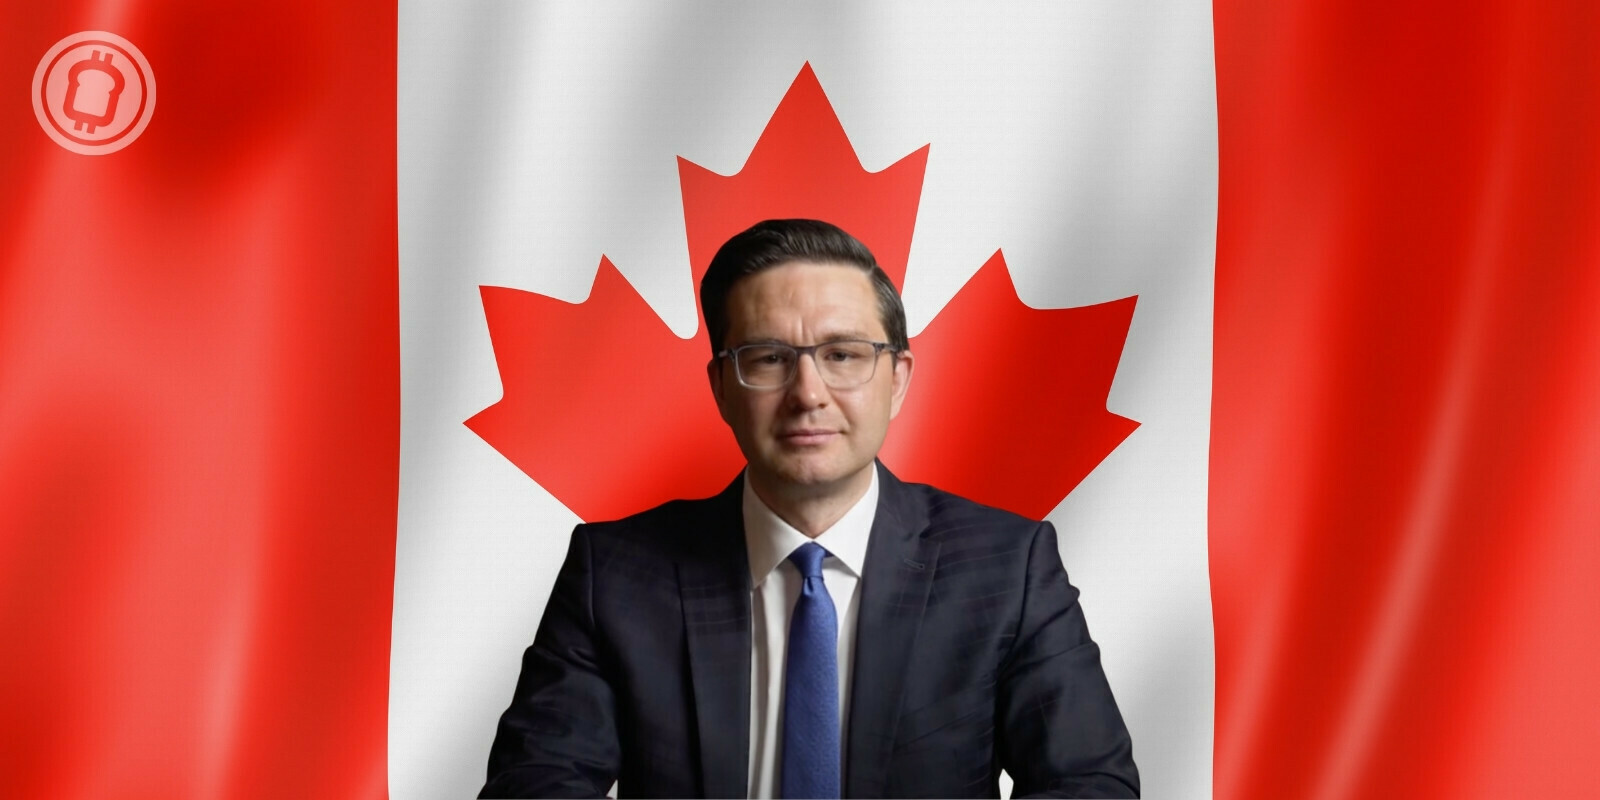 Pierre Poilievre, un adversaire politique de Justin Trudeau, souhaite que le Canada adopte le Bitcoin (BTC)